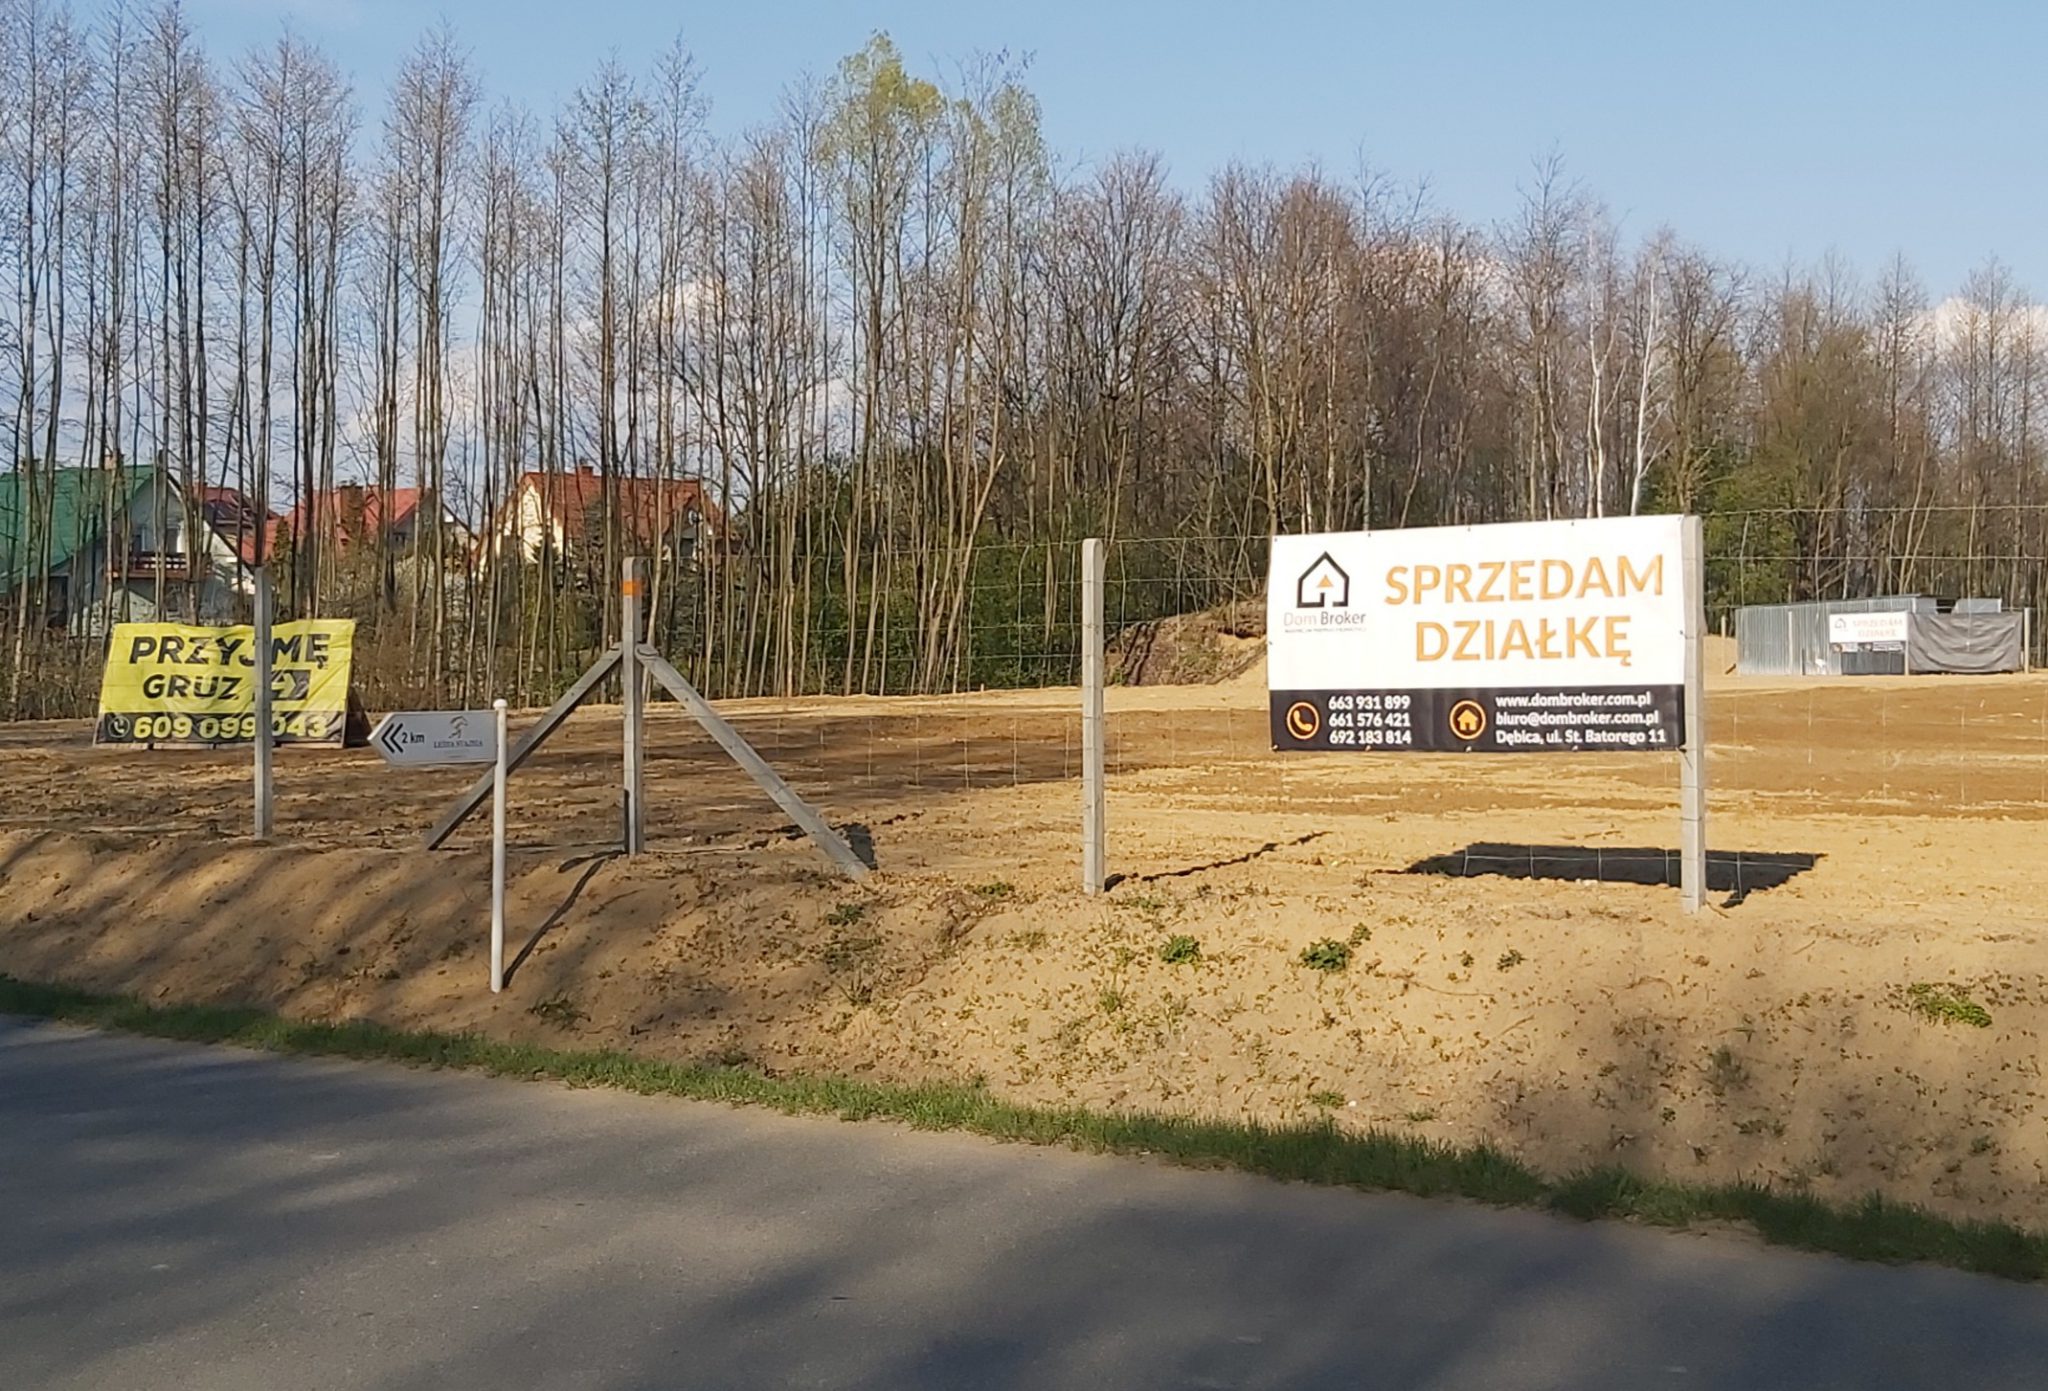 Działka budowlana, Nagoszyn, 11 ar, warunki zabudowy, SPRZEDANA